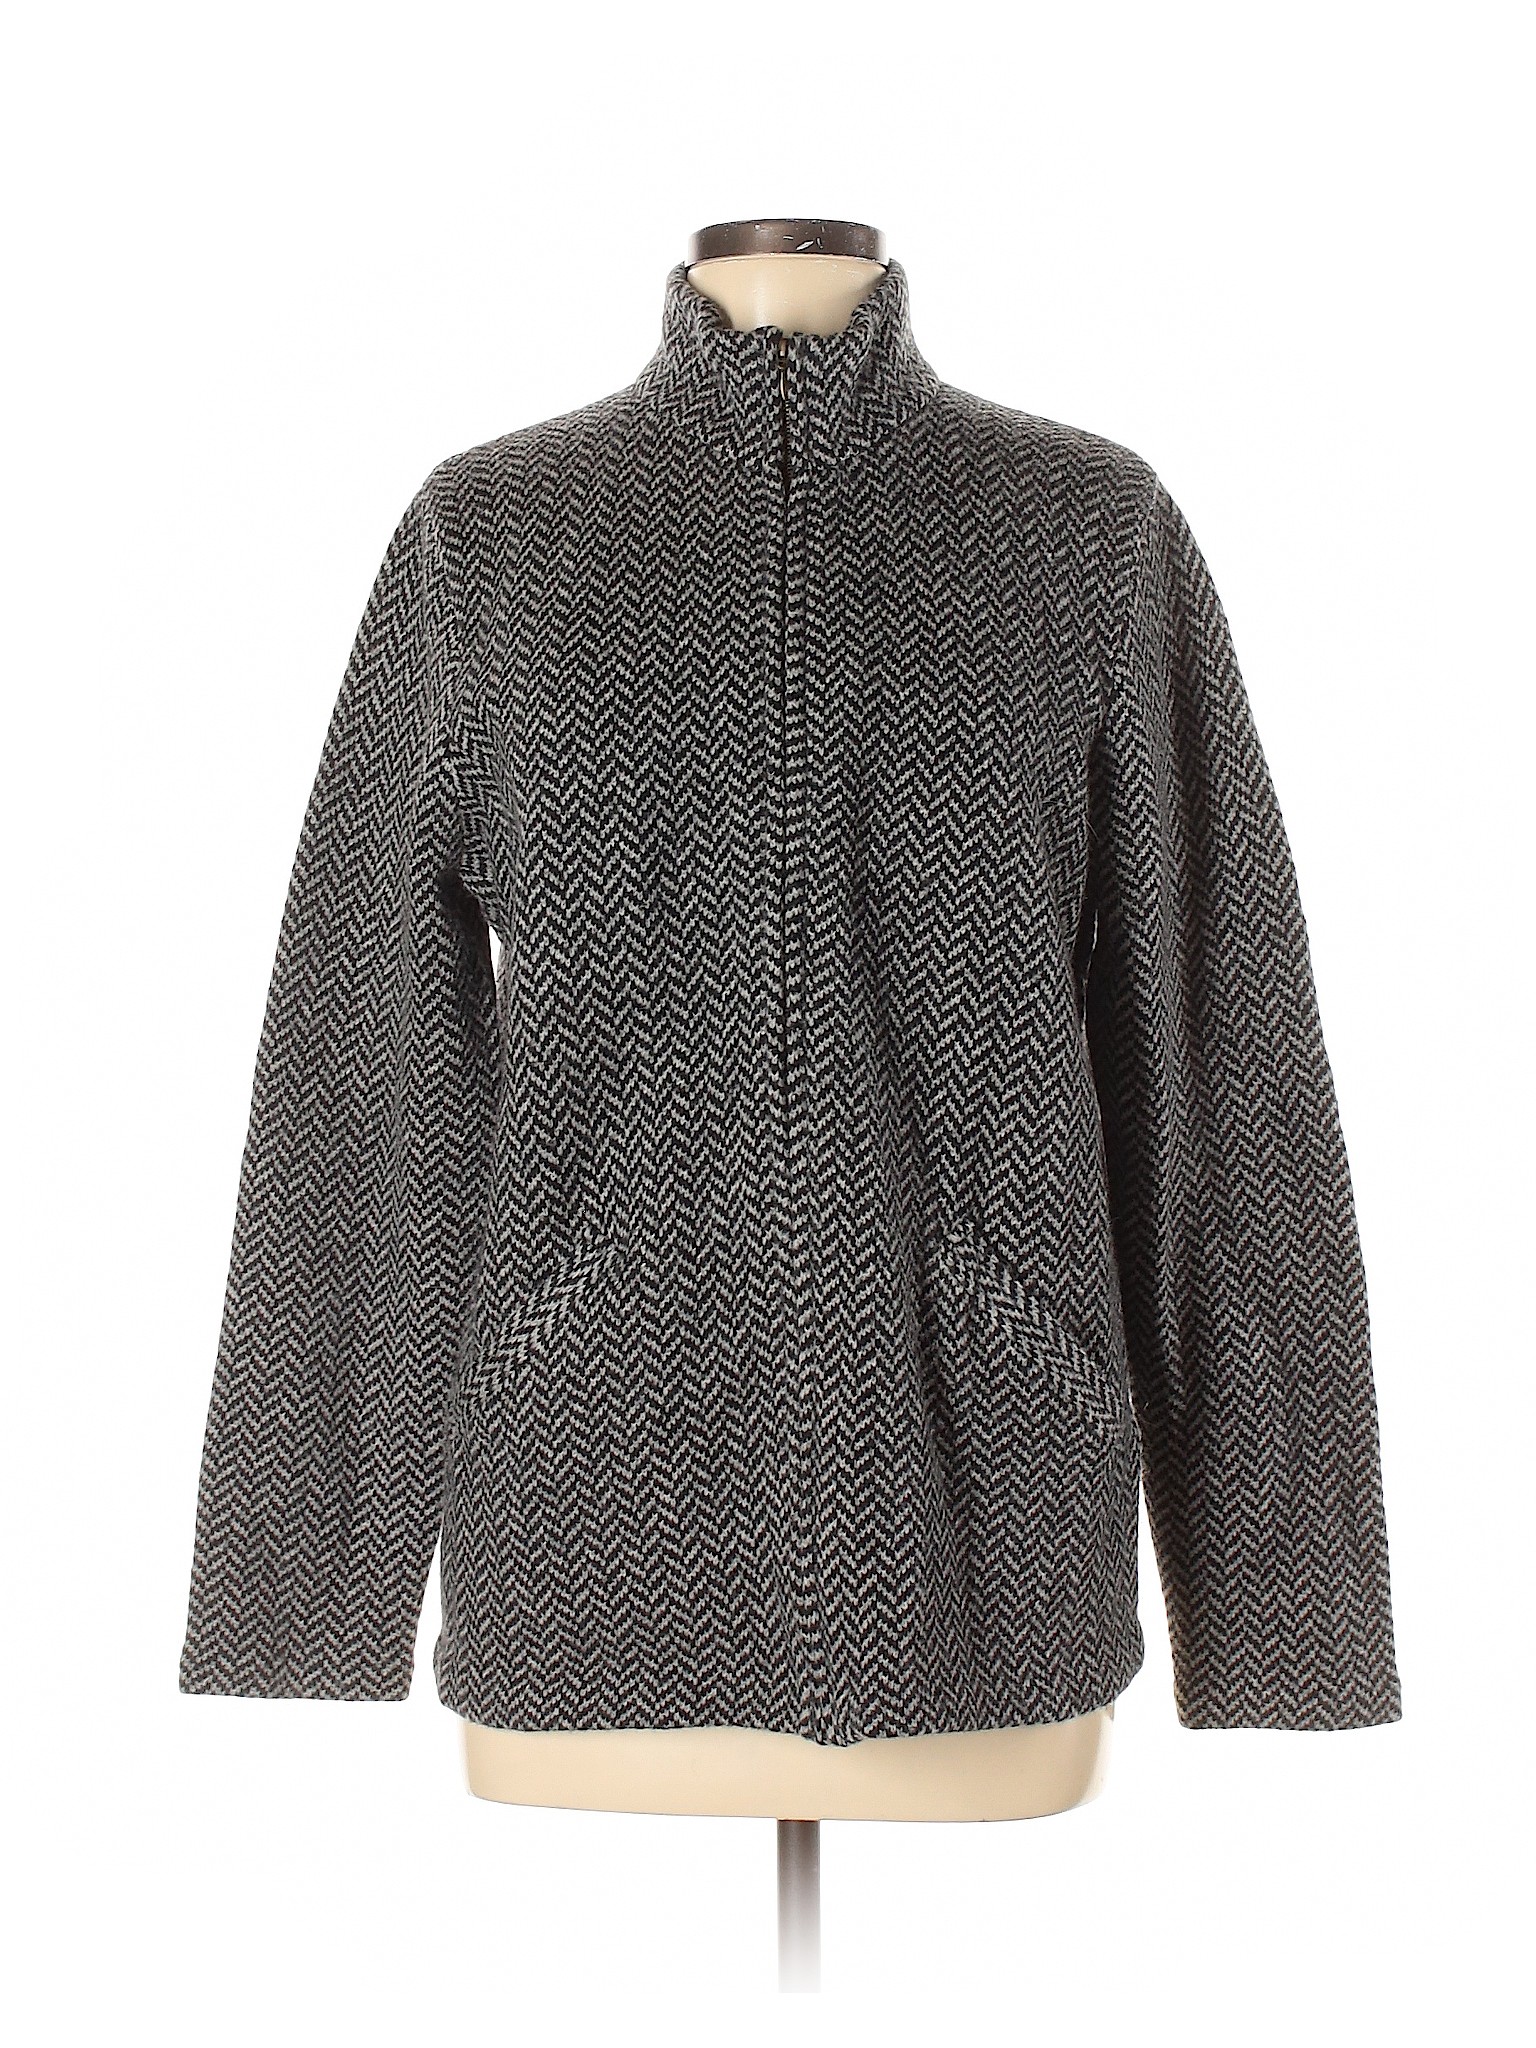 Lauren by Ralph Lauren Women Gray Wool Coat M | eBay